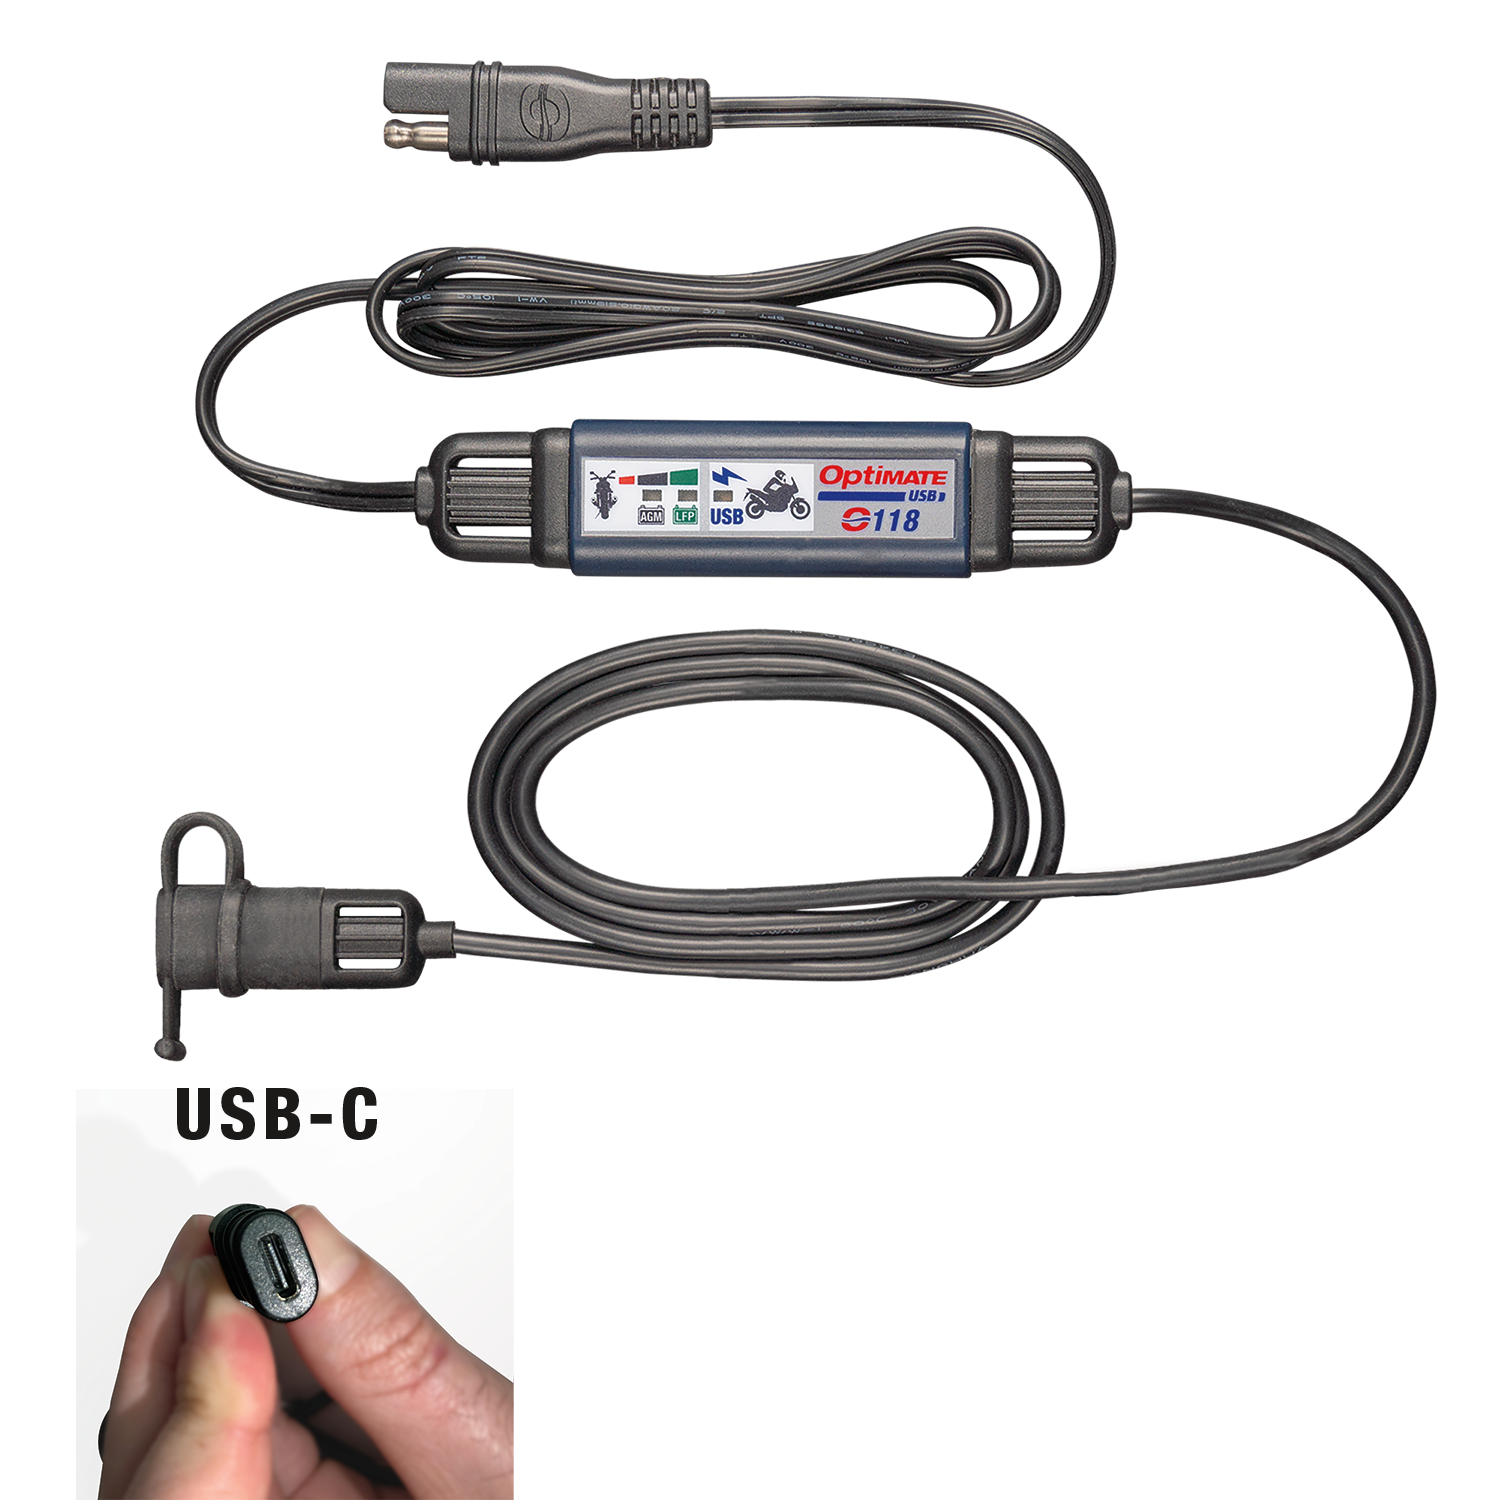 OptiMate USB O-118 - OptiMate